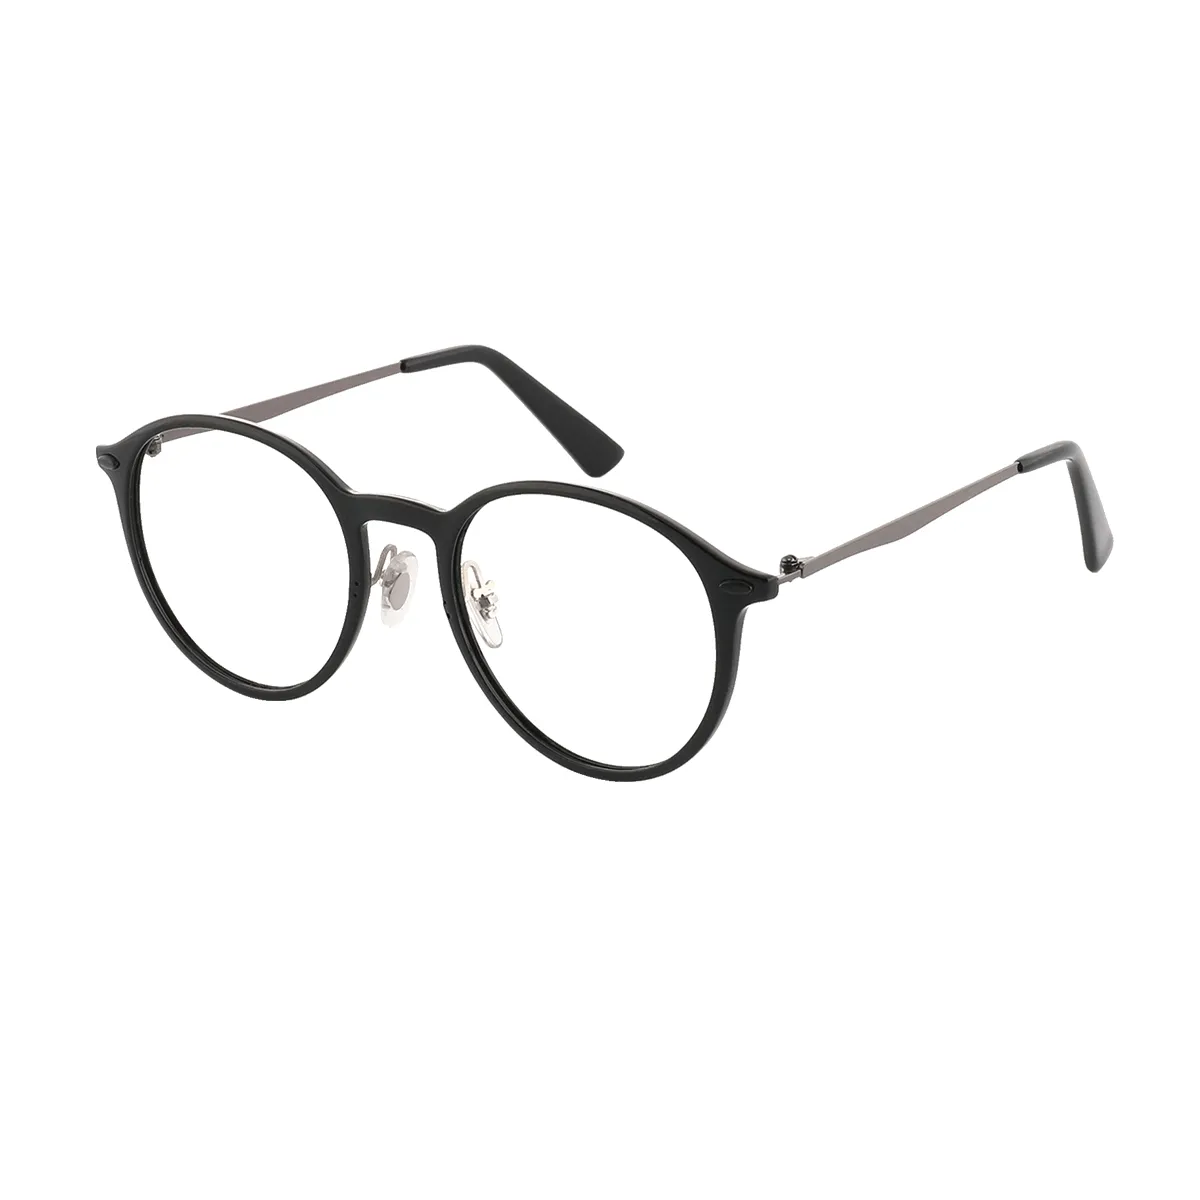 Classic Oval Brown Eyeglasses for Women & Men